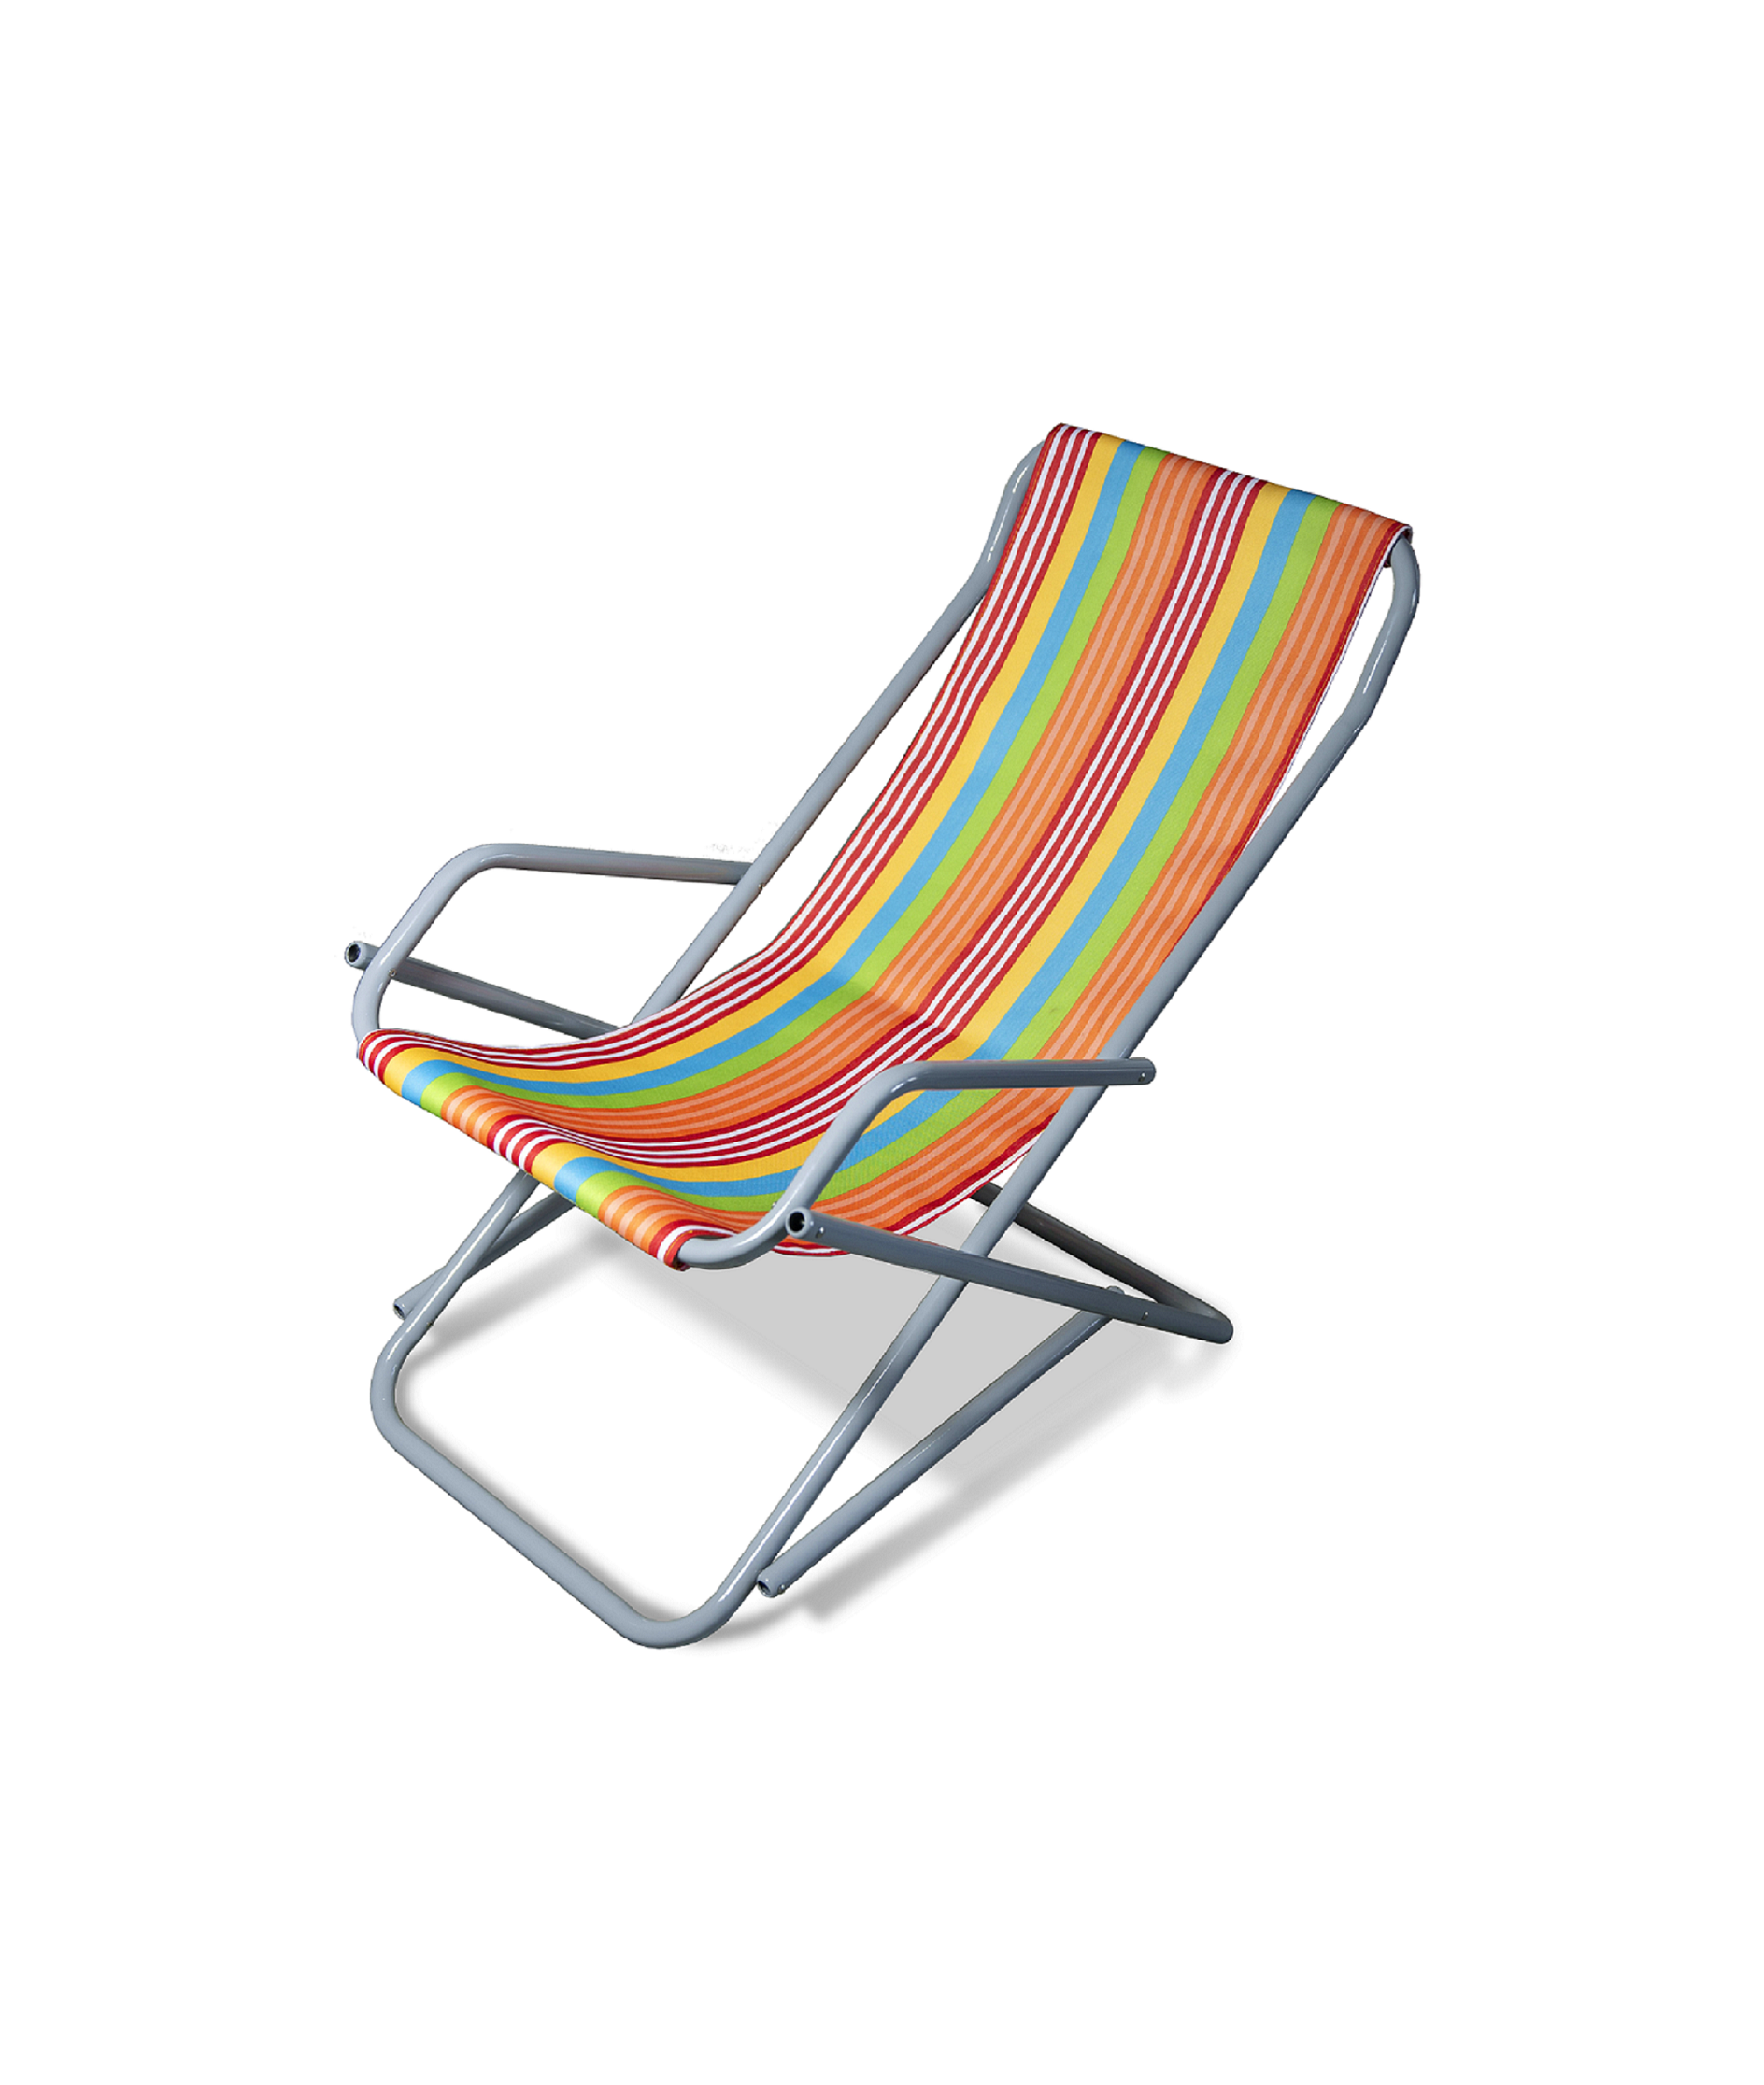 Пляжные кресла: надувные и складные, кресла-шезлонги и кресла-матрасы для отдыха на море, алюминиевые и модели из других материалов